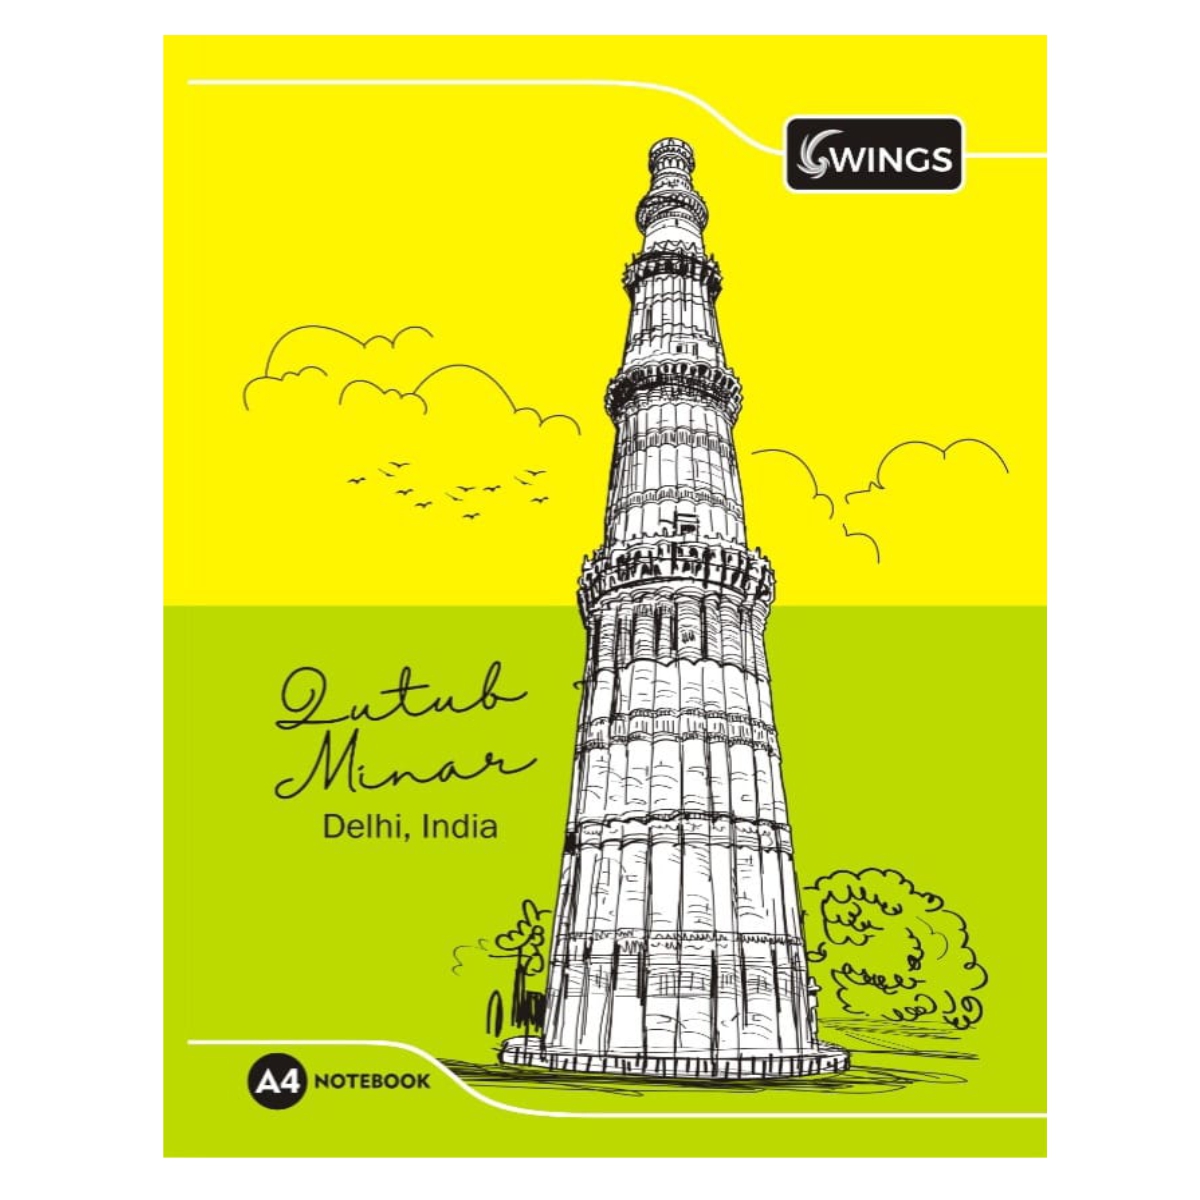 Qutub Minar Illustration.. by NaveenKumar on Dribbble